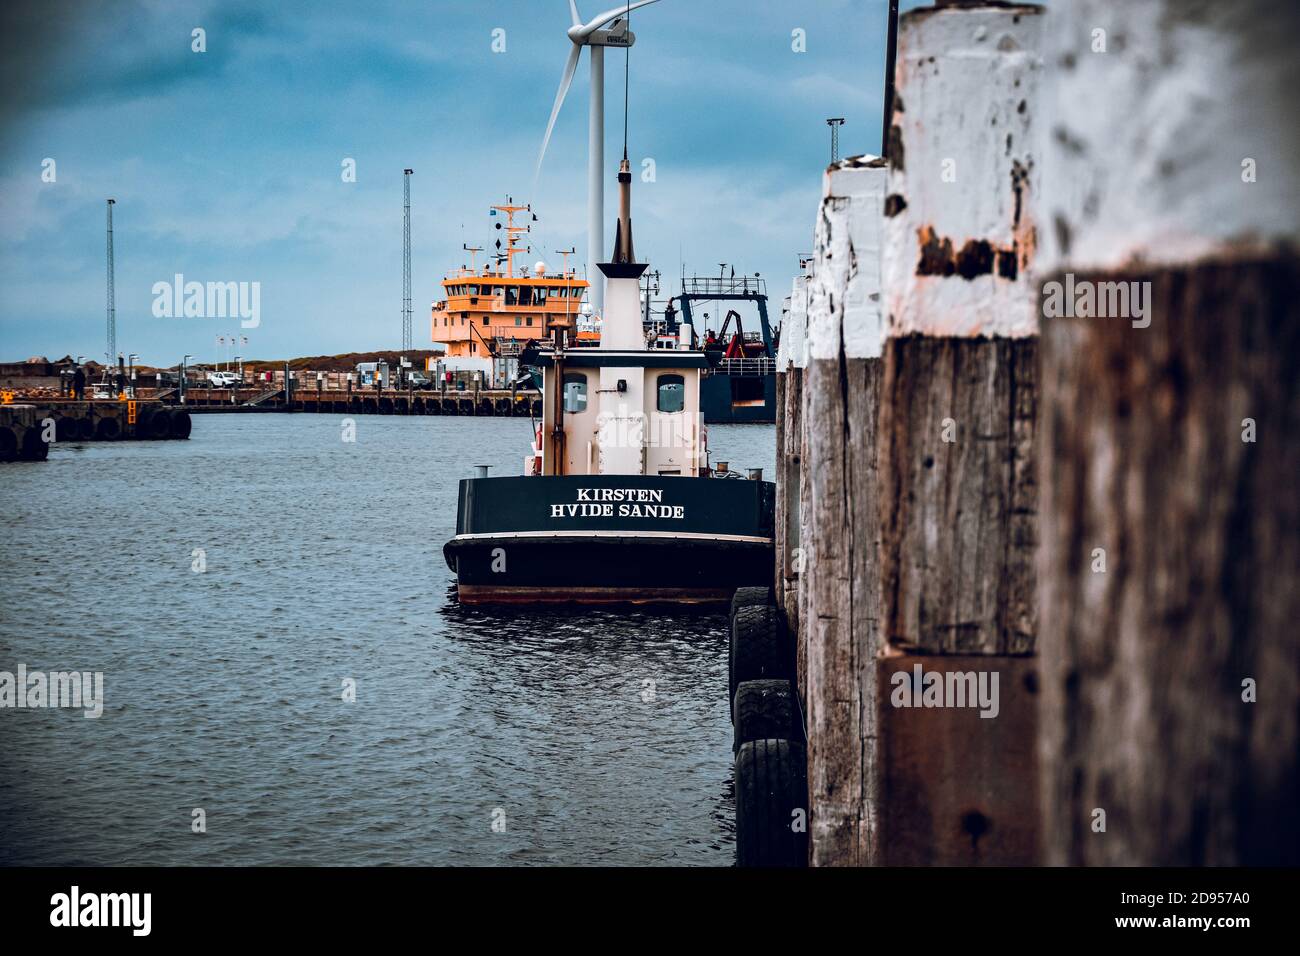 HVIDE SANDE, DENMARK - Oct 01, 2020: Ein Fischerboot in Hvide Sande an einem Pier in Daenemark. Stock Photo